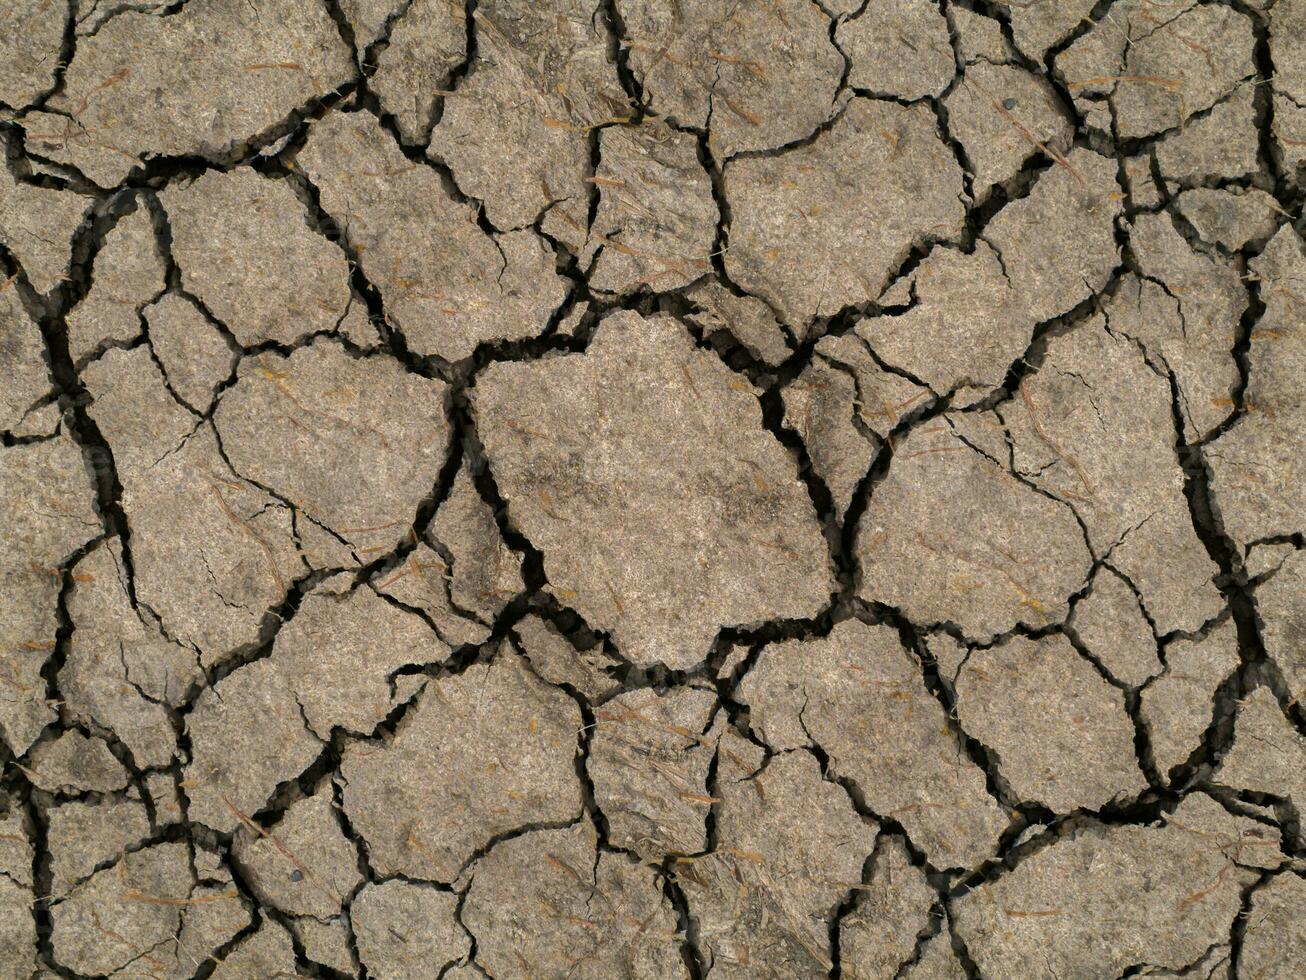 seco solo dentro verão foto